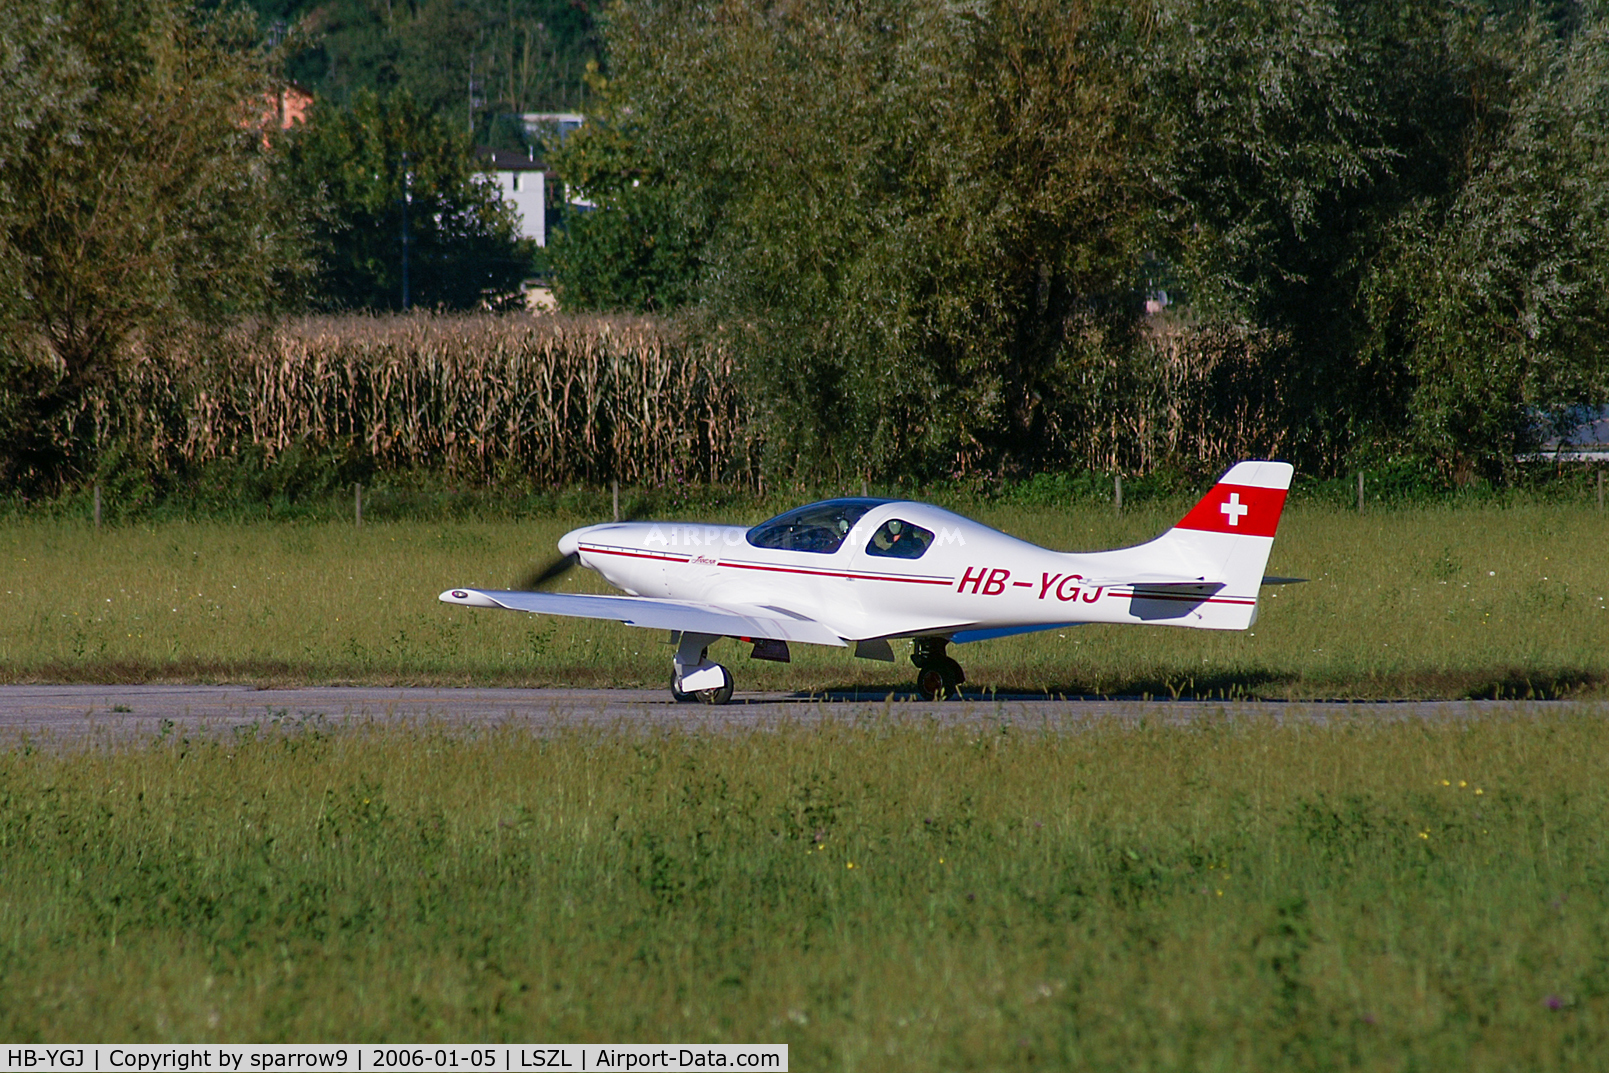 HB-YGJ, 1996 Lancair 235 C/N 227, Locarno-Magadino